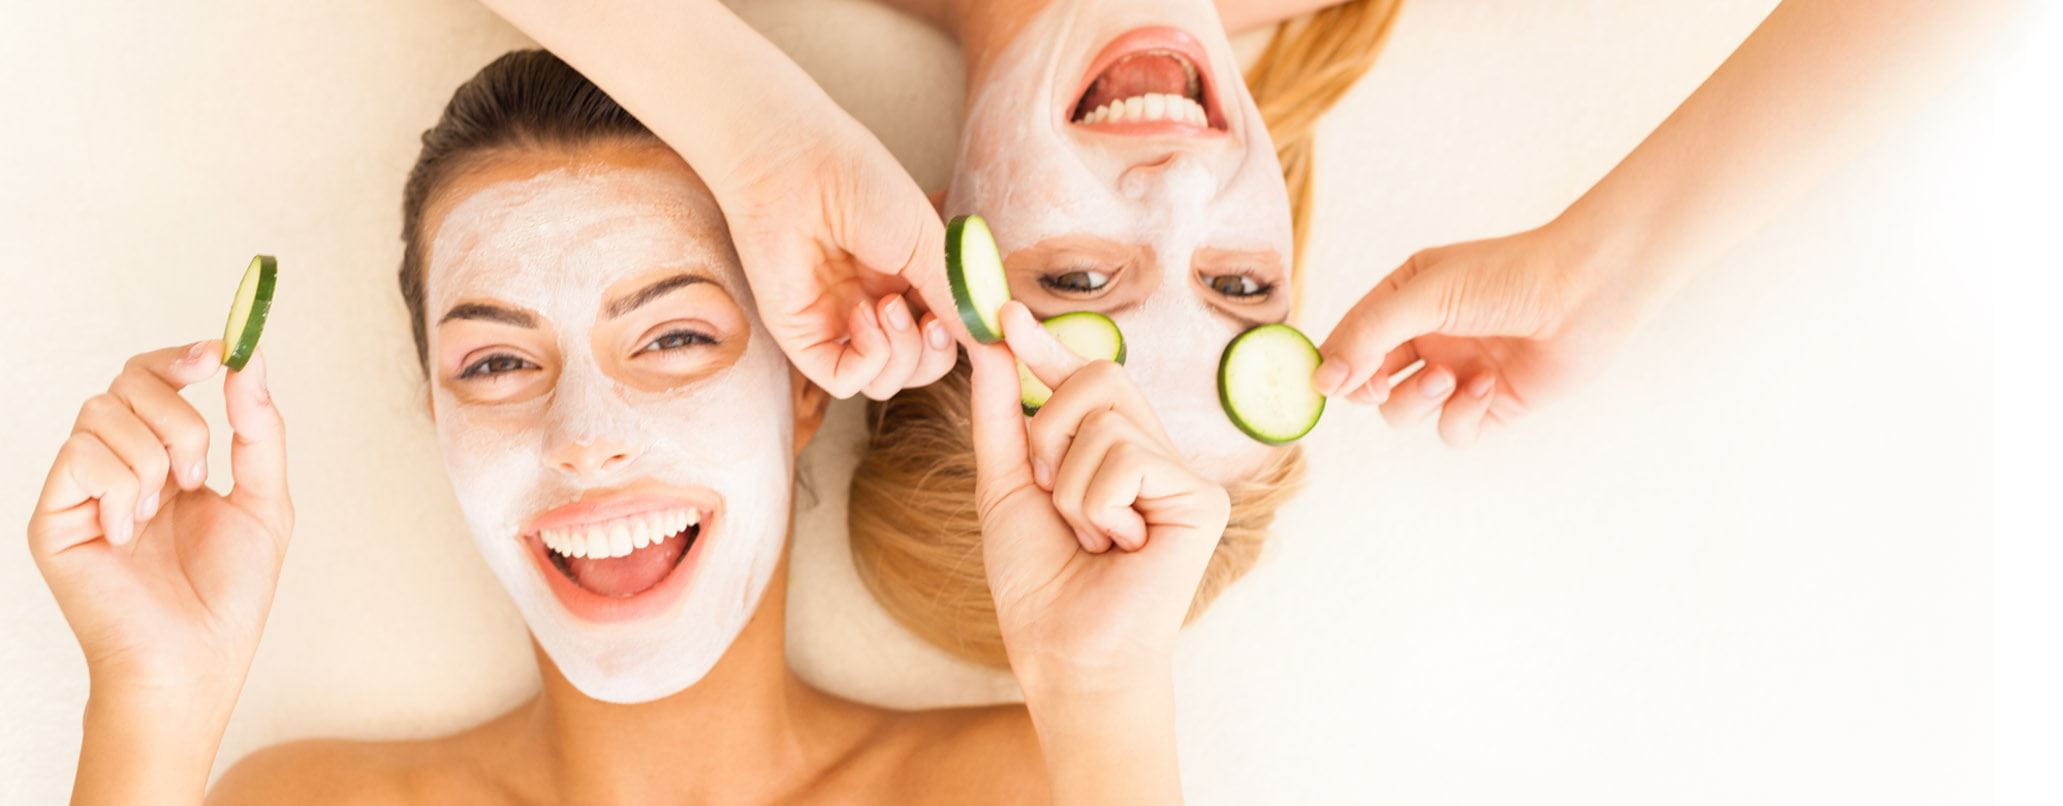 Was ist die beste Gesichtsmaske für Ihren Hauttyp?